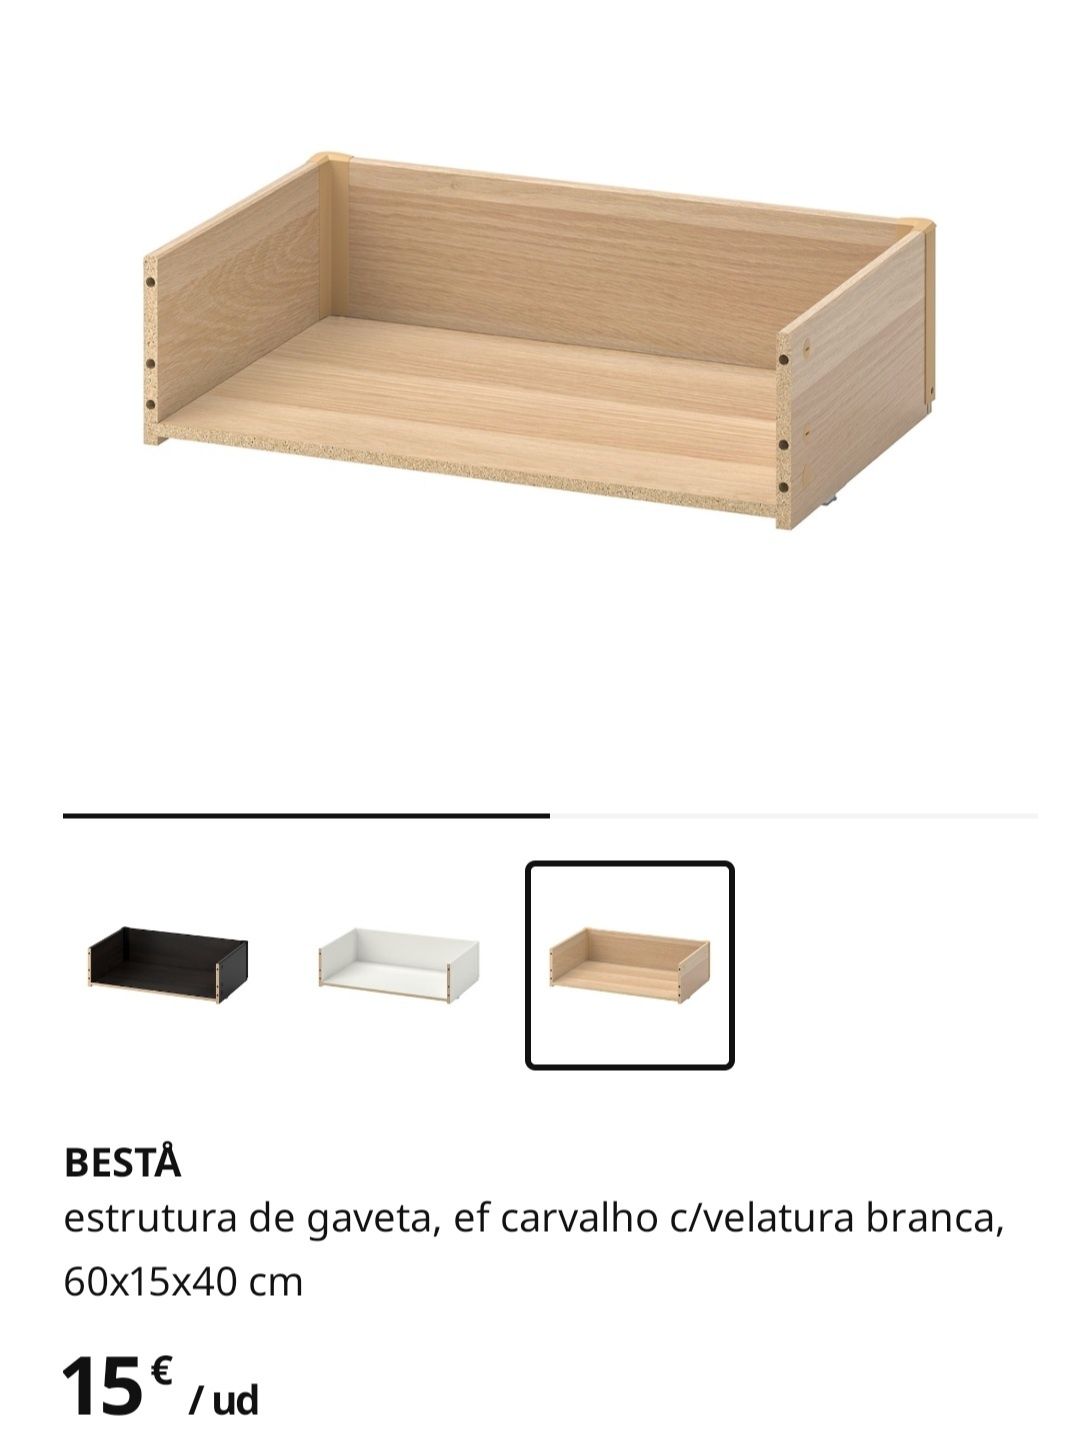 Armário IKEA série Bestä